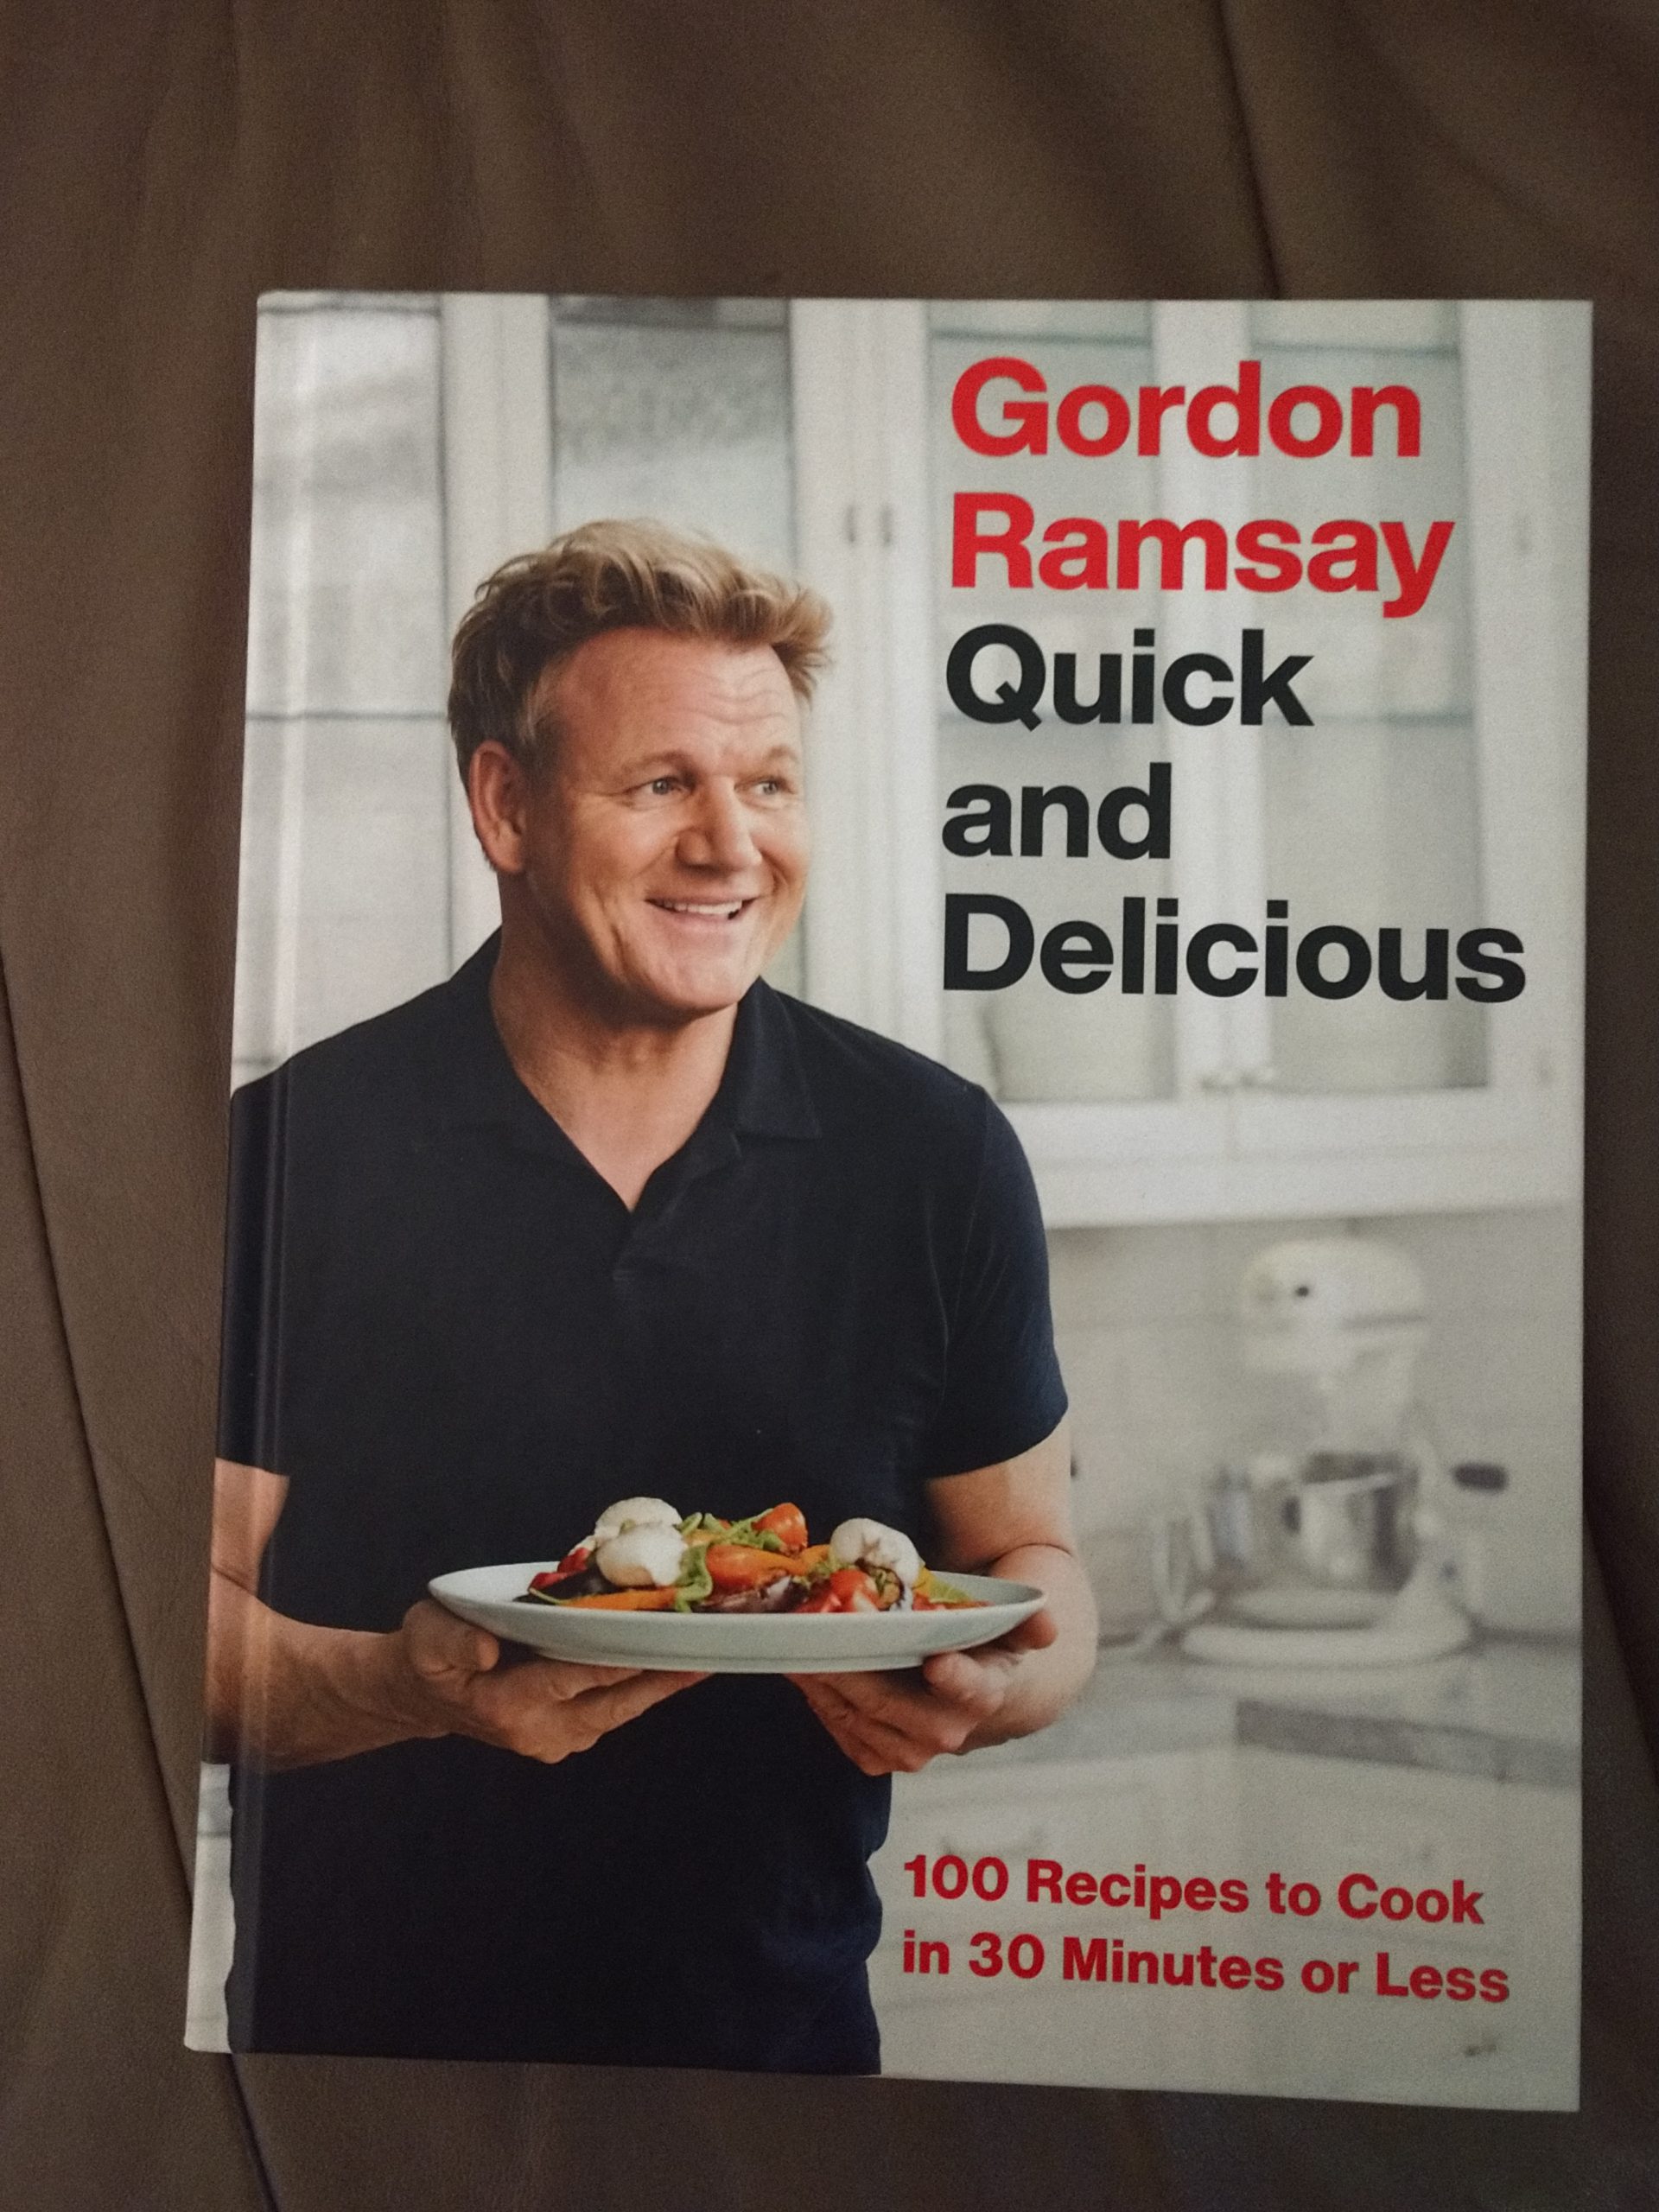 Gordon Ramsay Books In Order - qbooksf